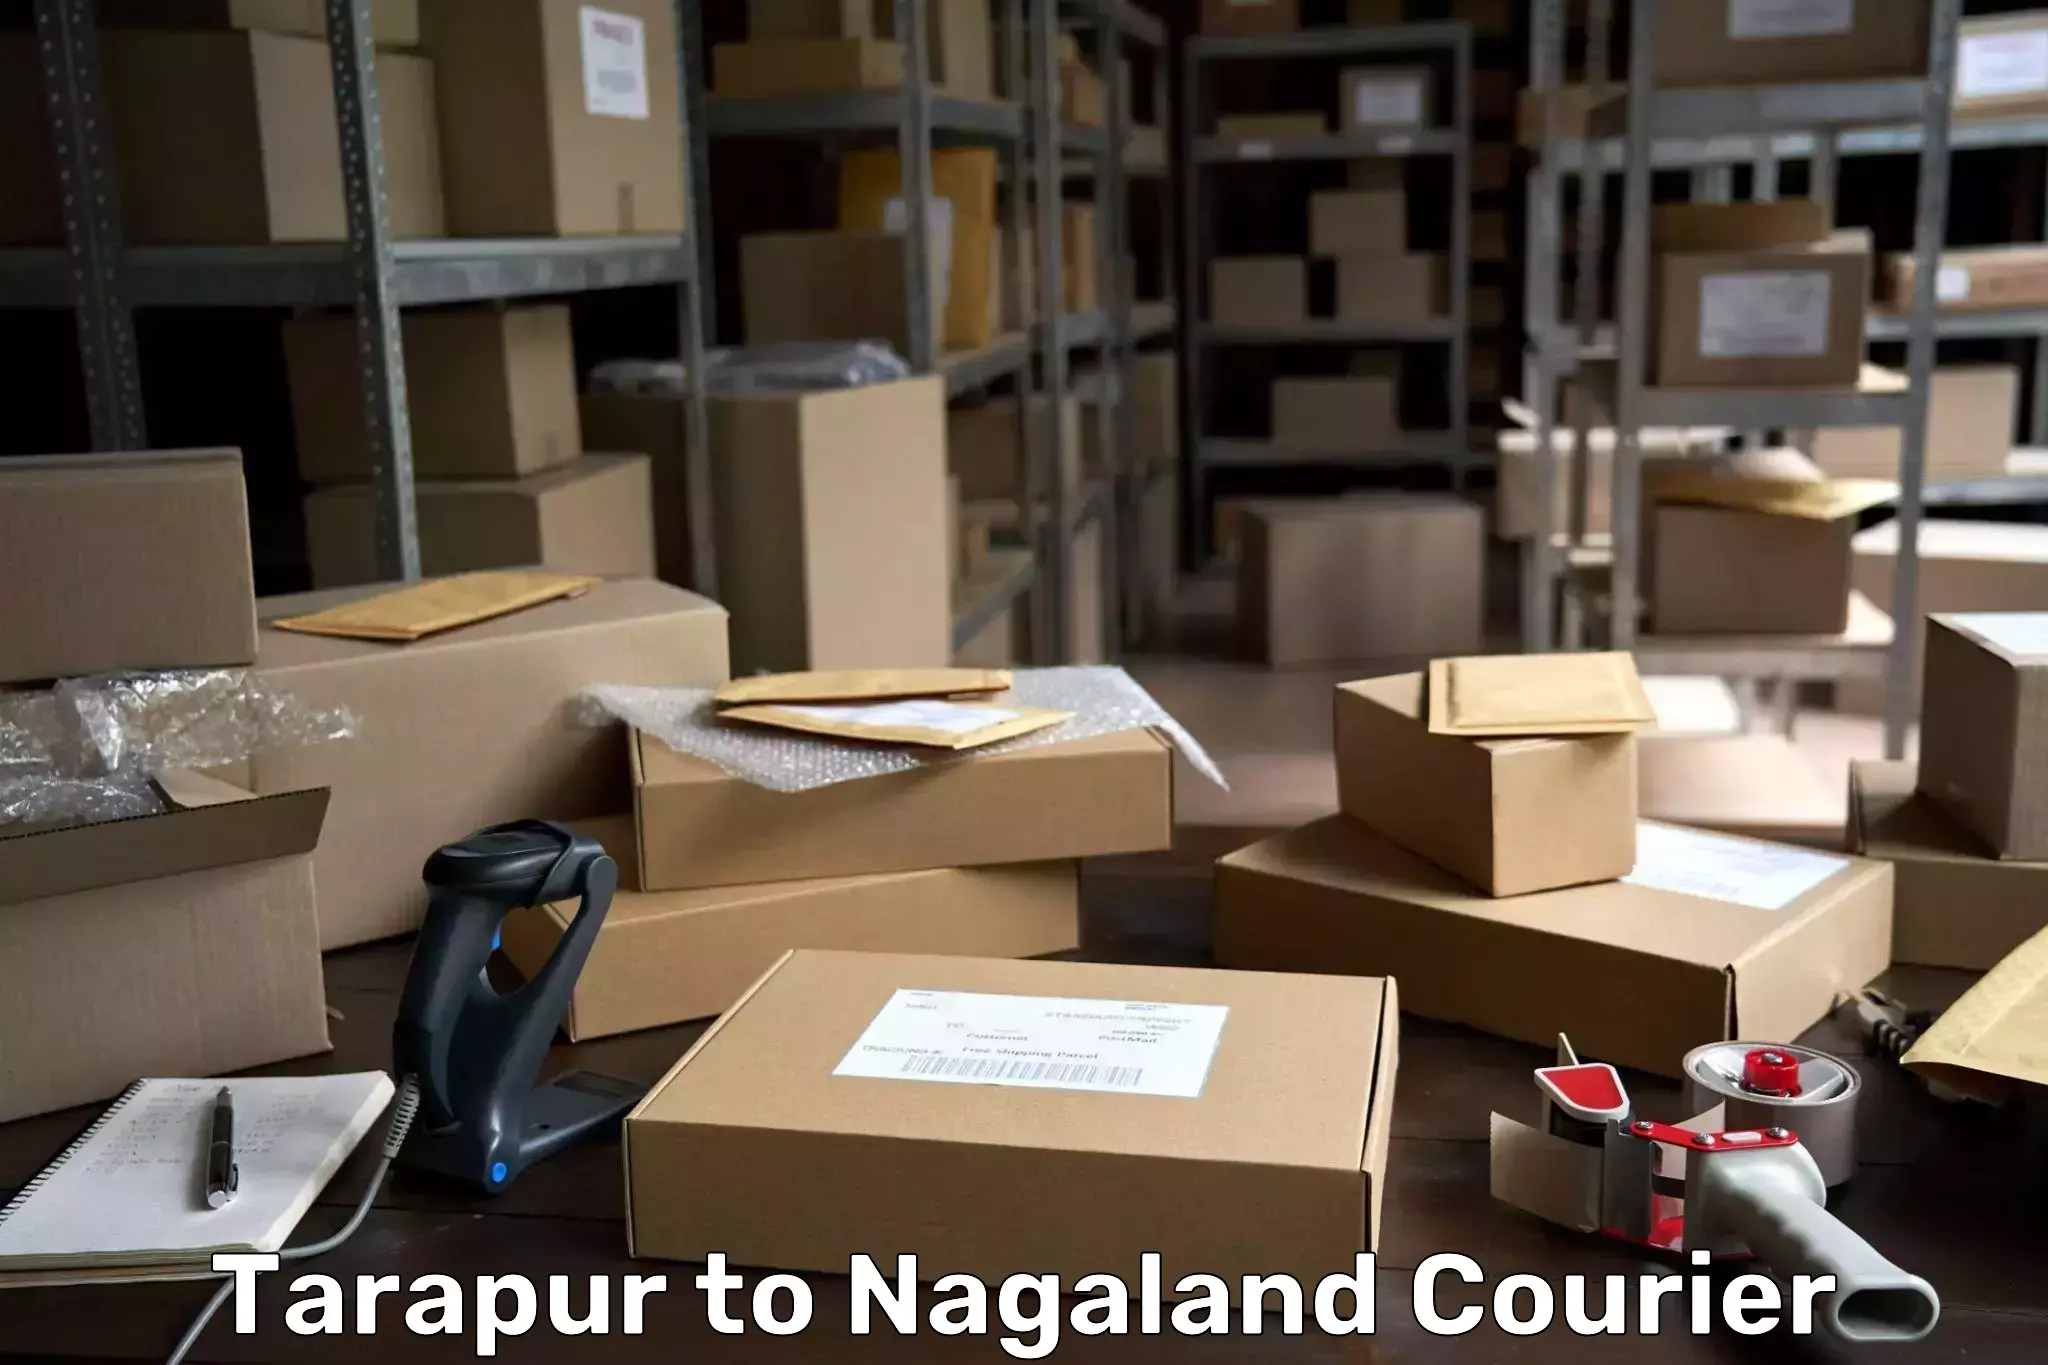 Customer-focused courier Tarapur to Peren